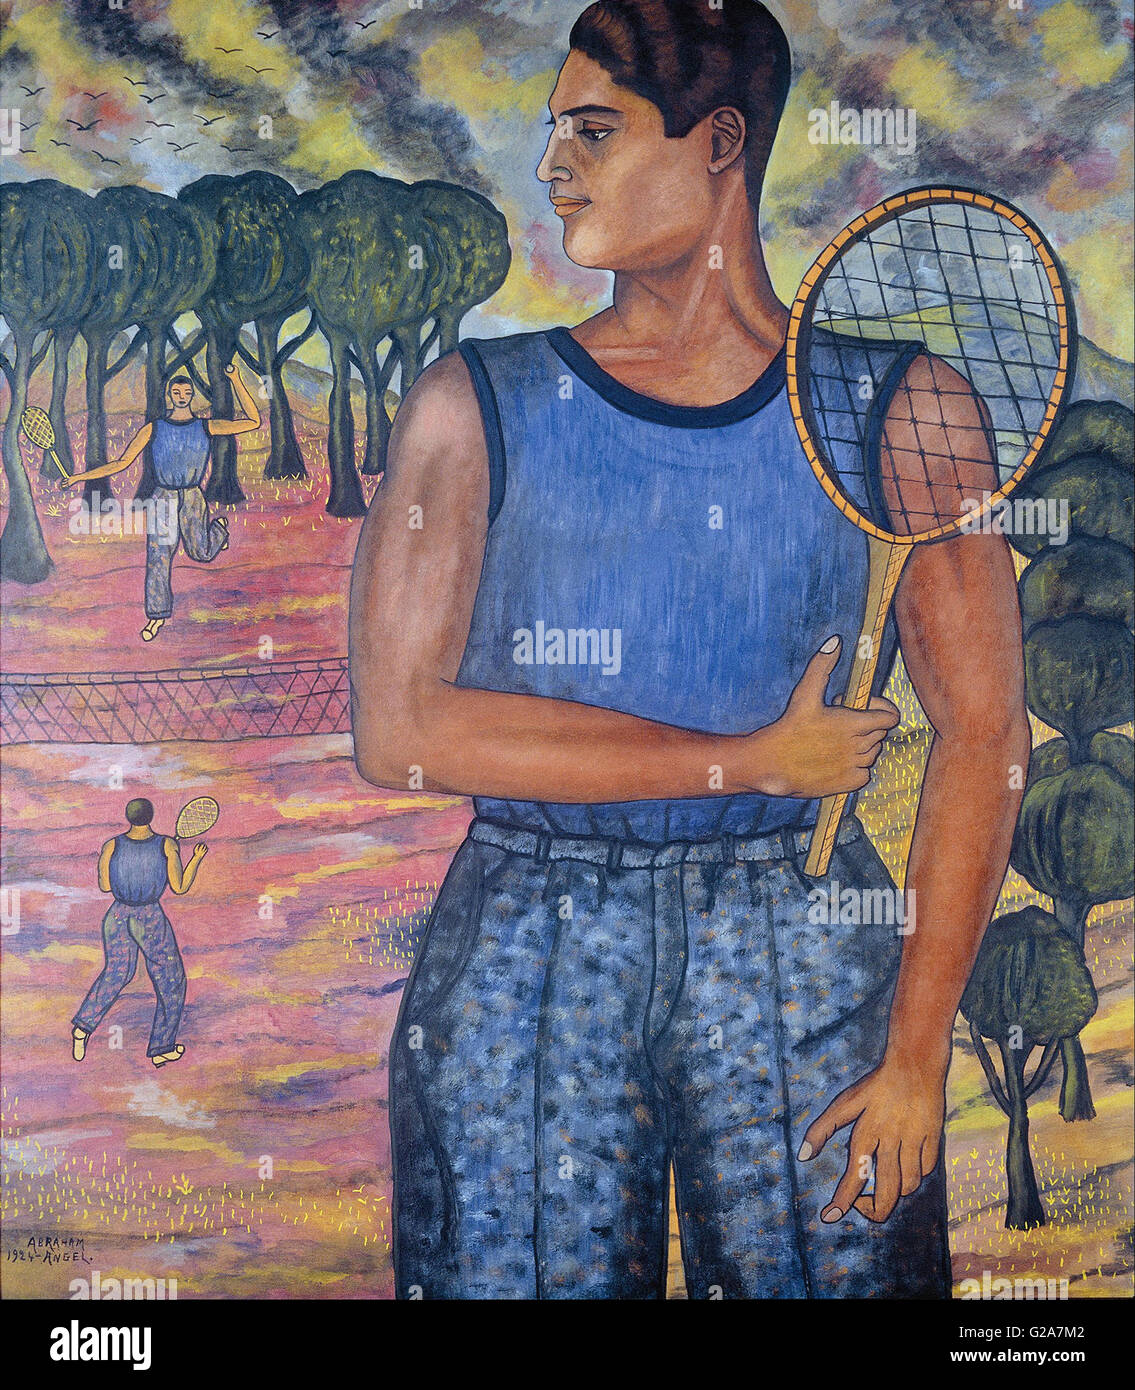 Abramo Ángel - Ritratto di Hugo Tilghman (il giocatore di tennis) - Museo Nacional de Arte de Mexico Foto Stock